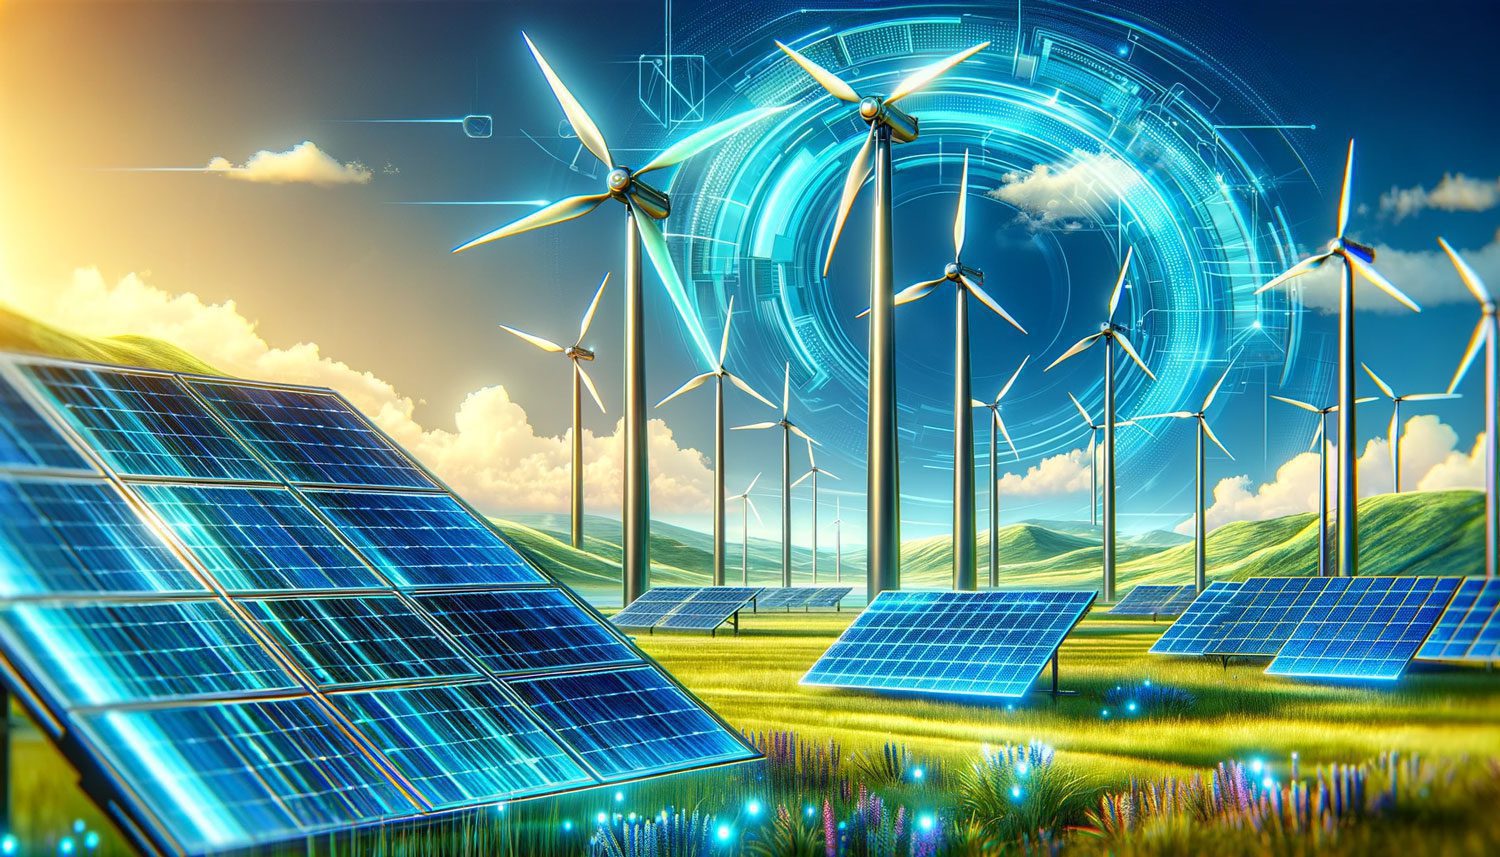 Cengiz Holding Yenilenebilir Enerji Yatırımları Eti Bakır ve Eti Alüminyum Güneş Enerjisi Projeleri Türkiye Enerji Sektörü Dönüşümü